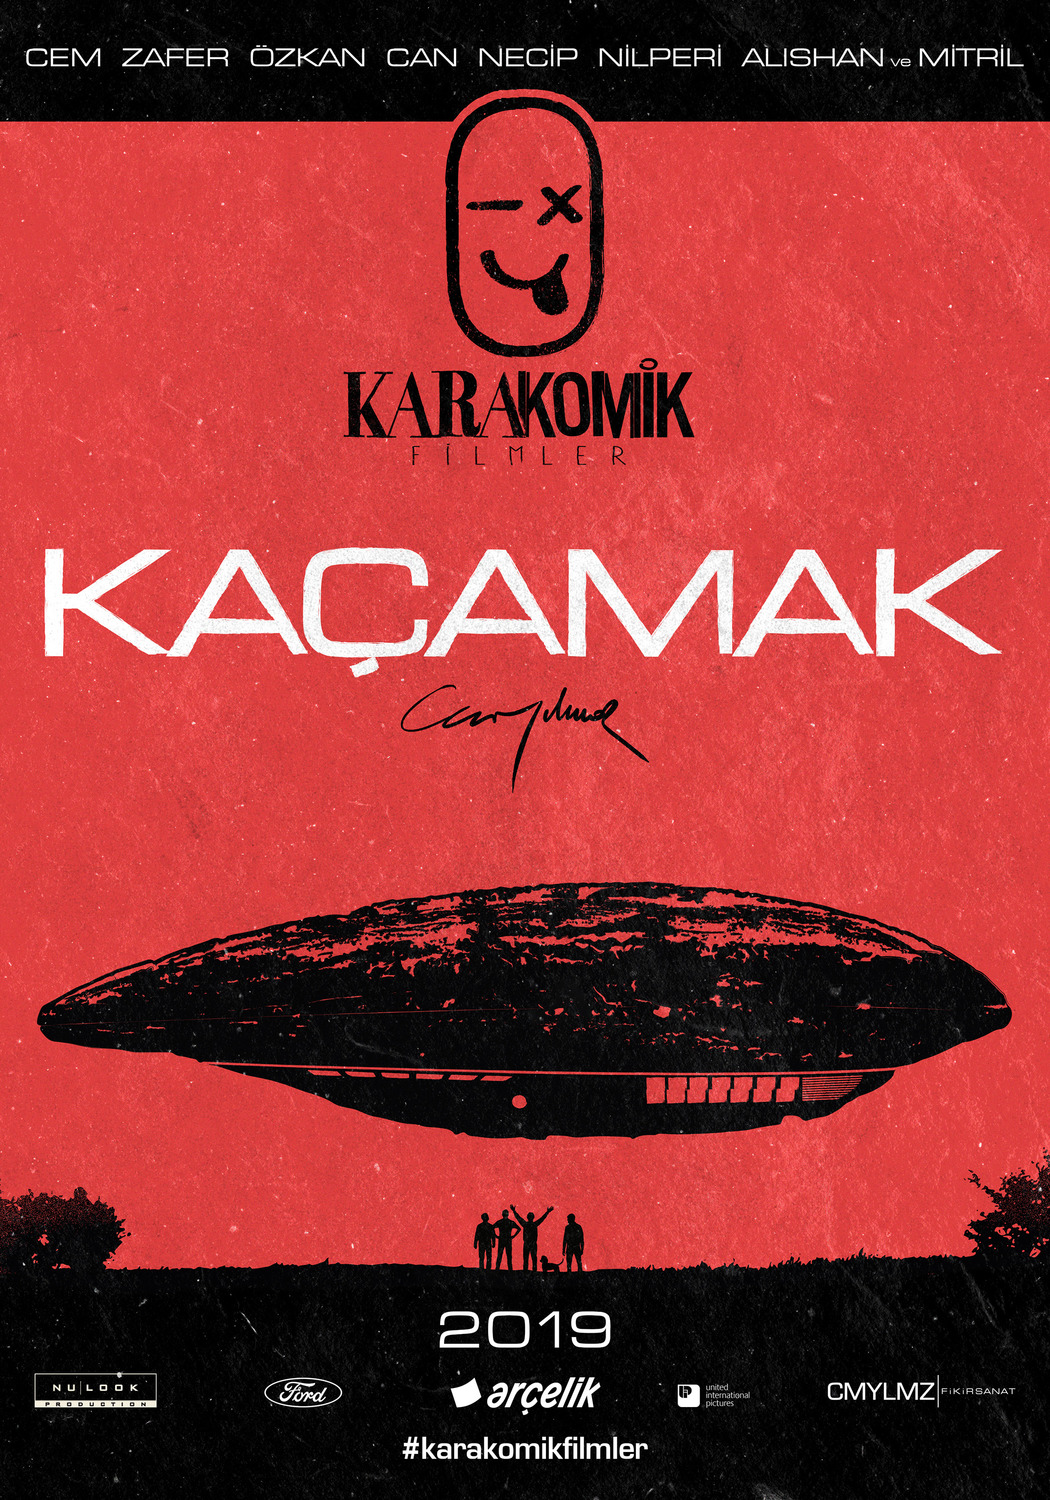 Extra Large Movie Poster Image for Karakomik Filmler (#2 of 9)